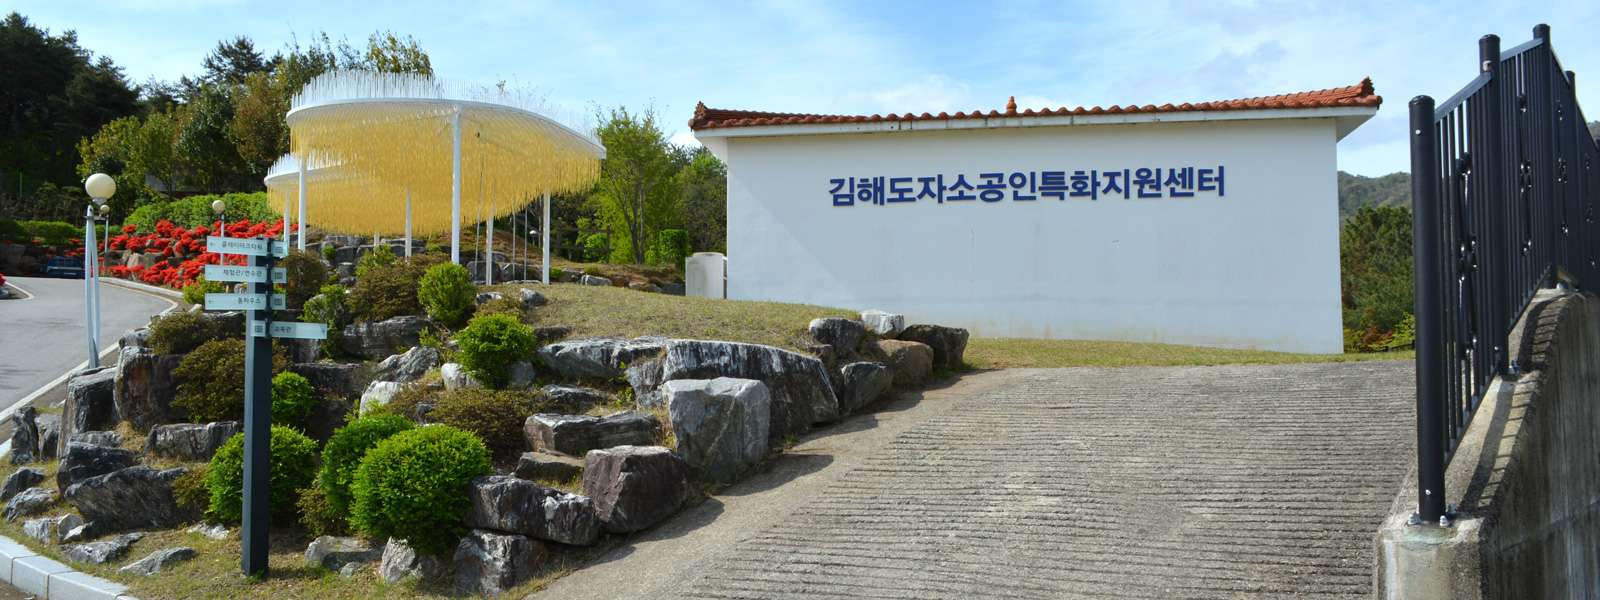 김해도자소공인특화지원센터